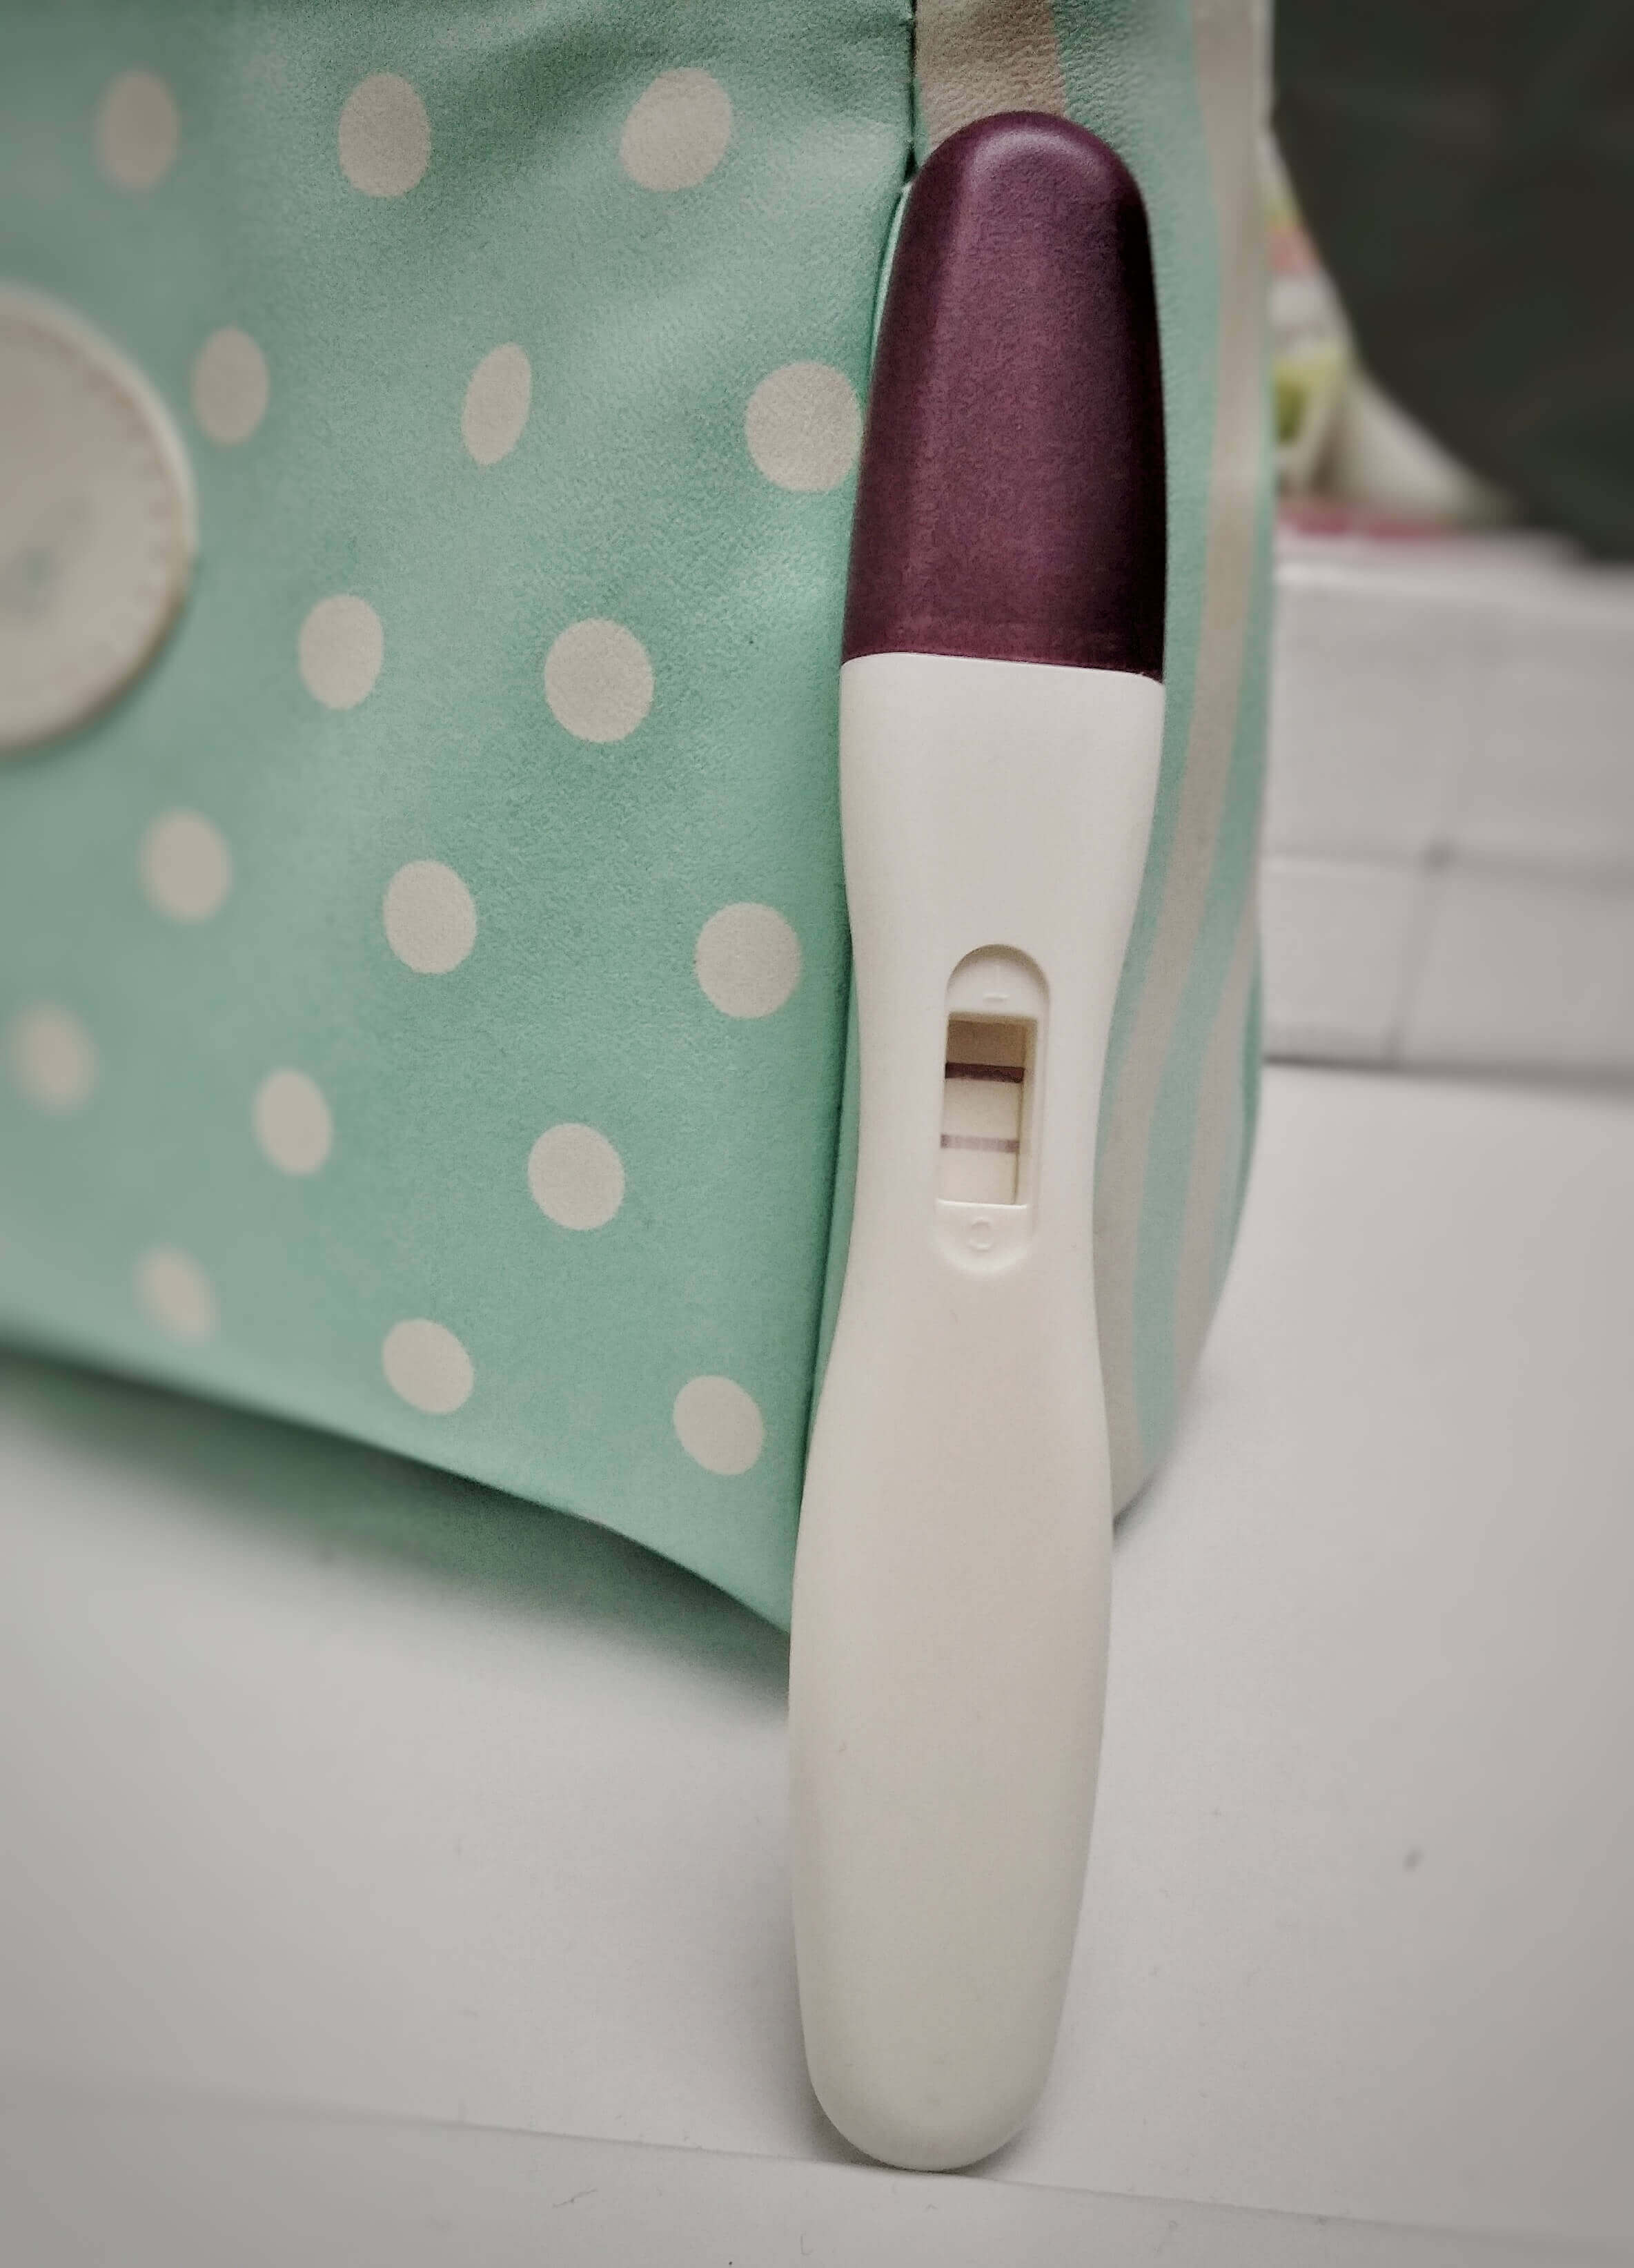 Schwangerschaftstest positiv blutung